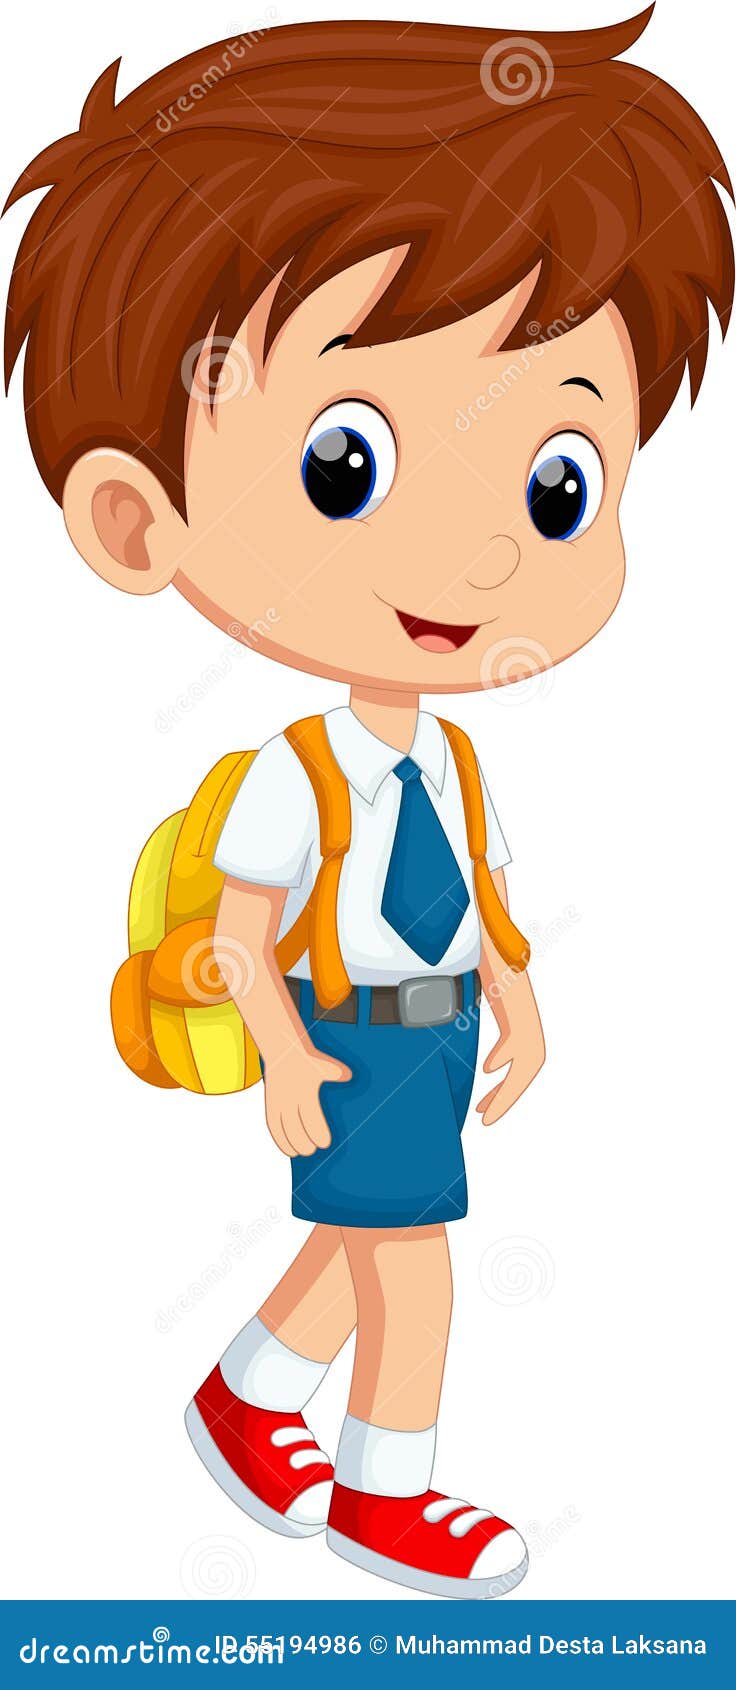 Cute schoolboy cartoon